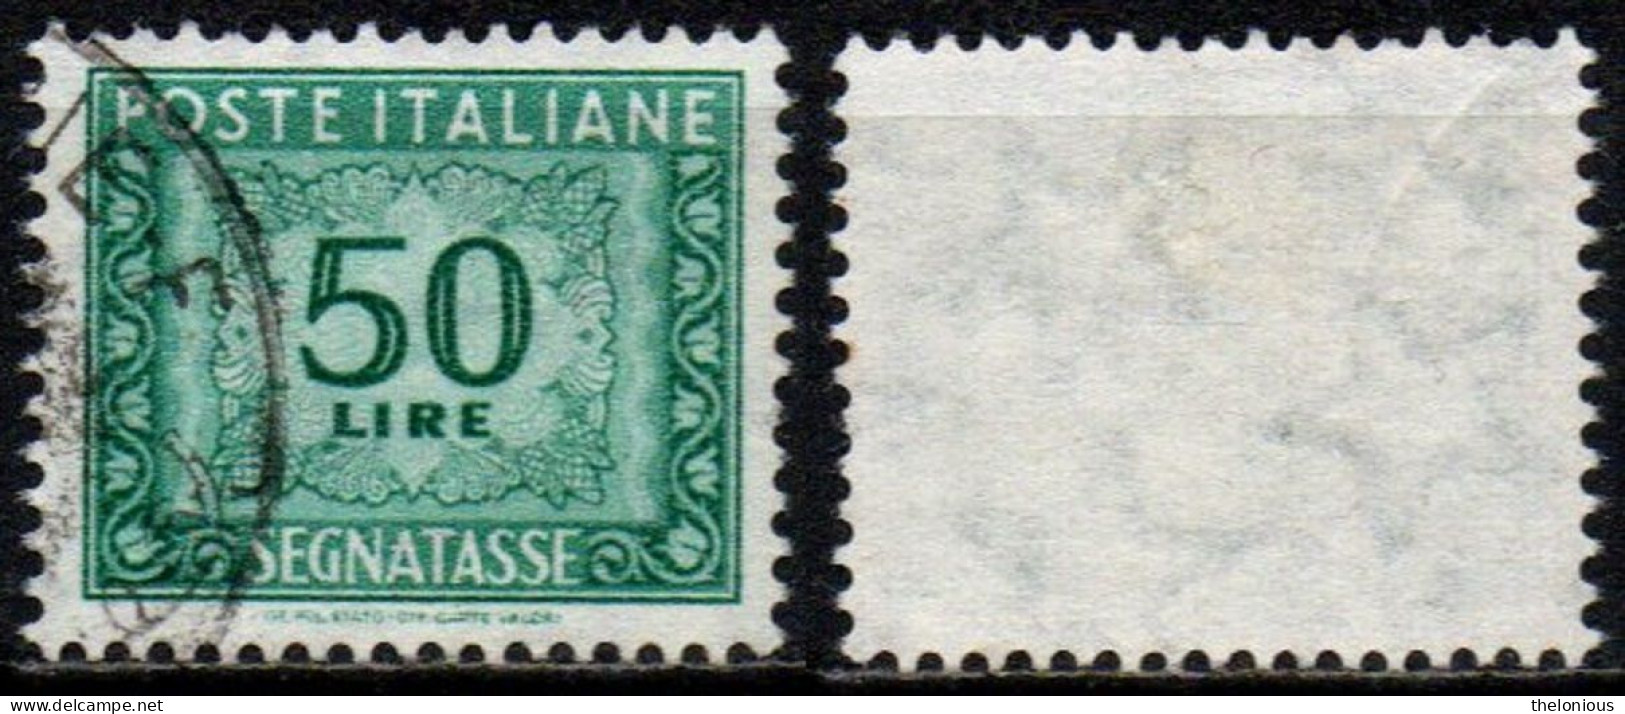 # 1955 Italia Repubblica Segnatasse 50 Lire Usato Filigrana Stelle 2° Tipo - Postage Due